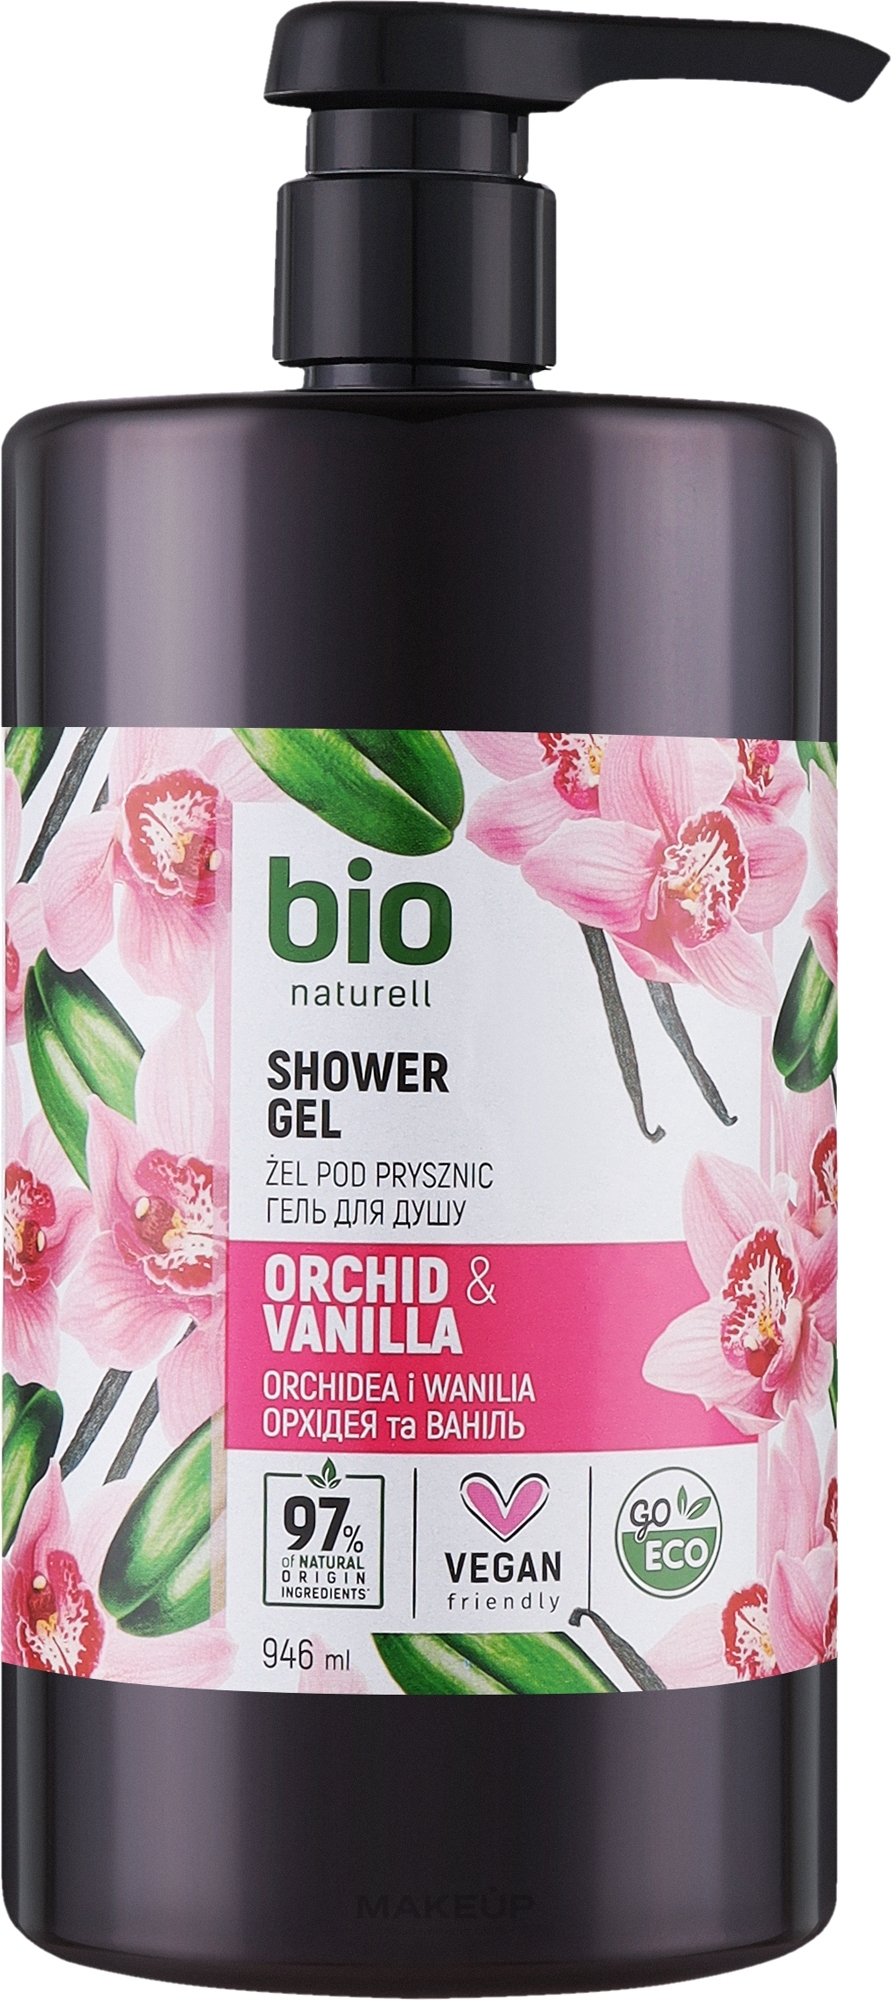 Крем-гель для душа "Орхідея та ваніль" с помпой - Bio Naturell Orchid & Vanilla Сreamy Shower Gel — фото 946ml